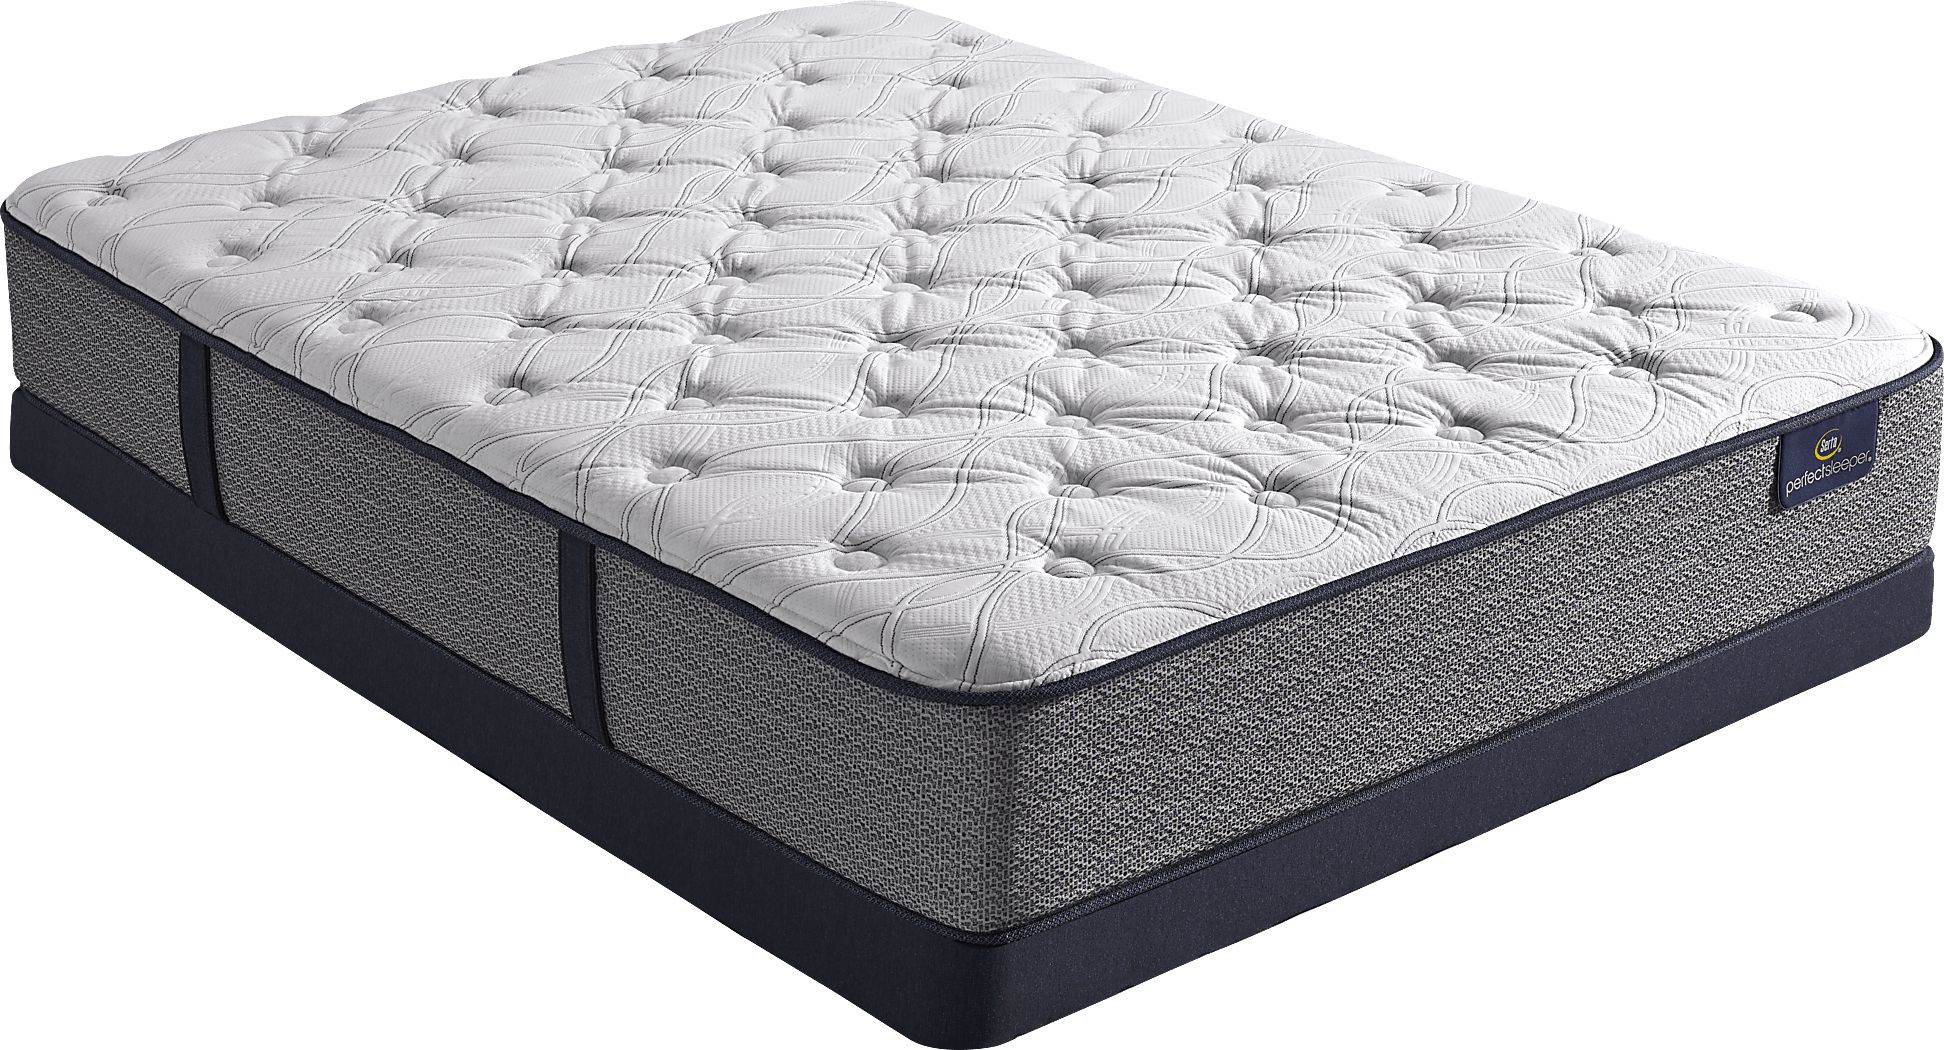 serta perfect sleeper vernon hills queen mattress reviews